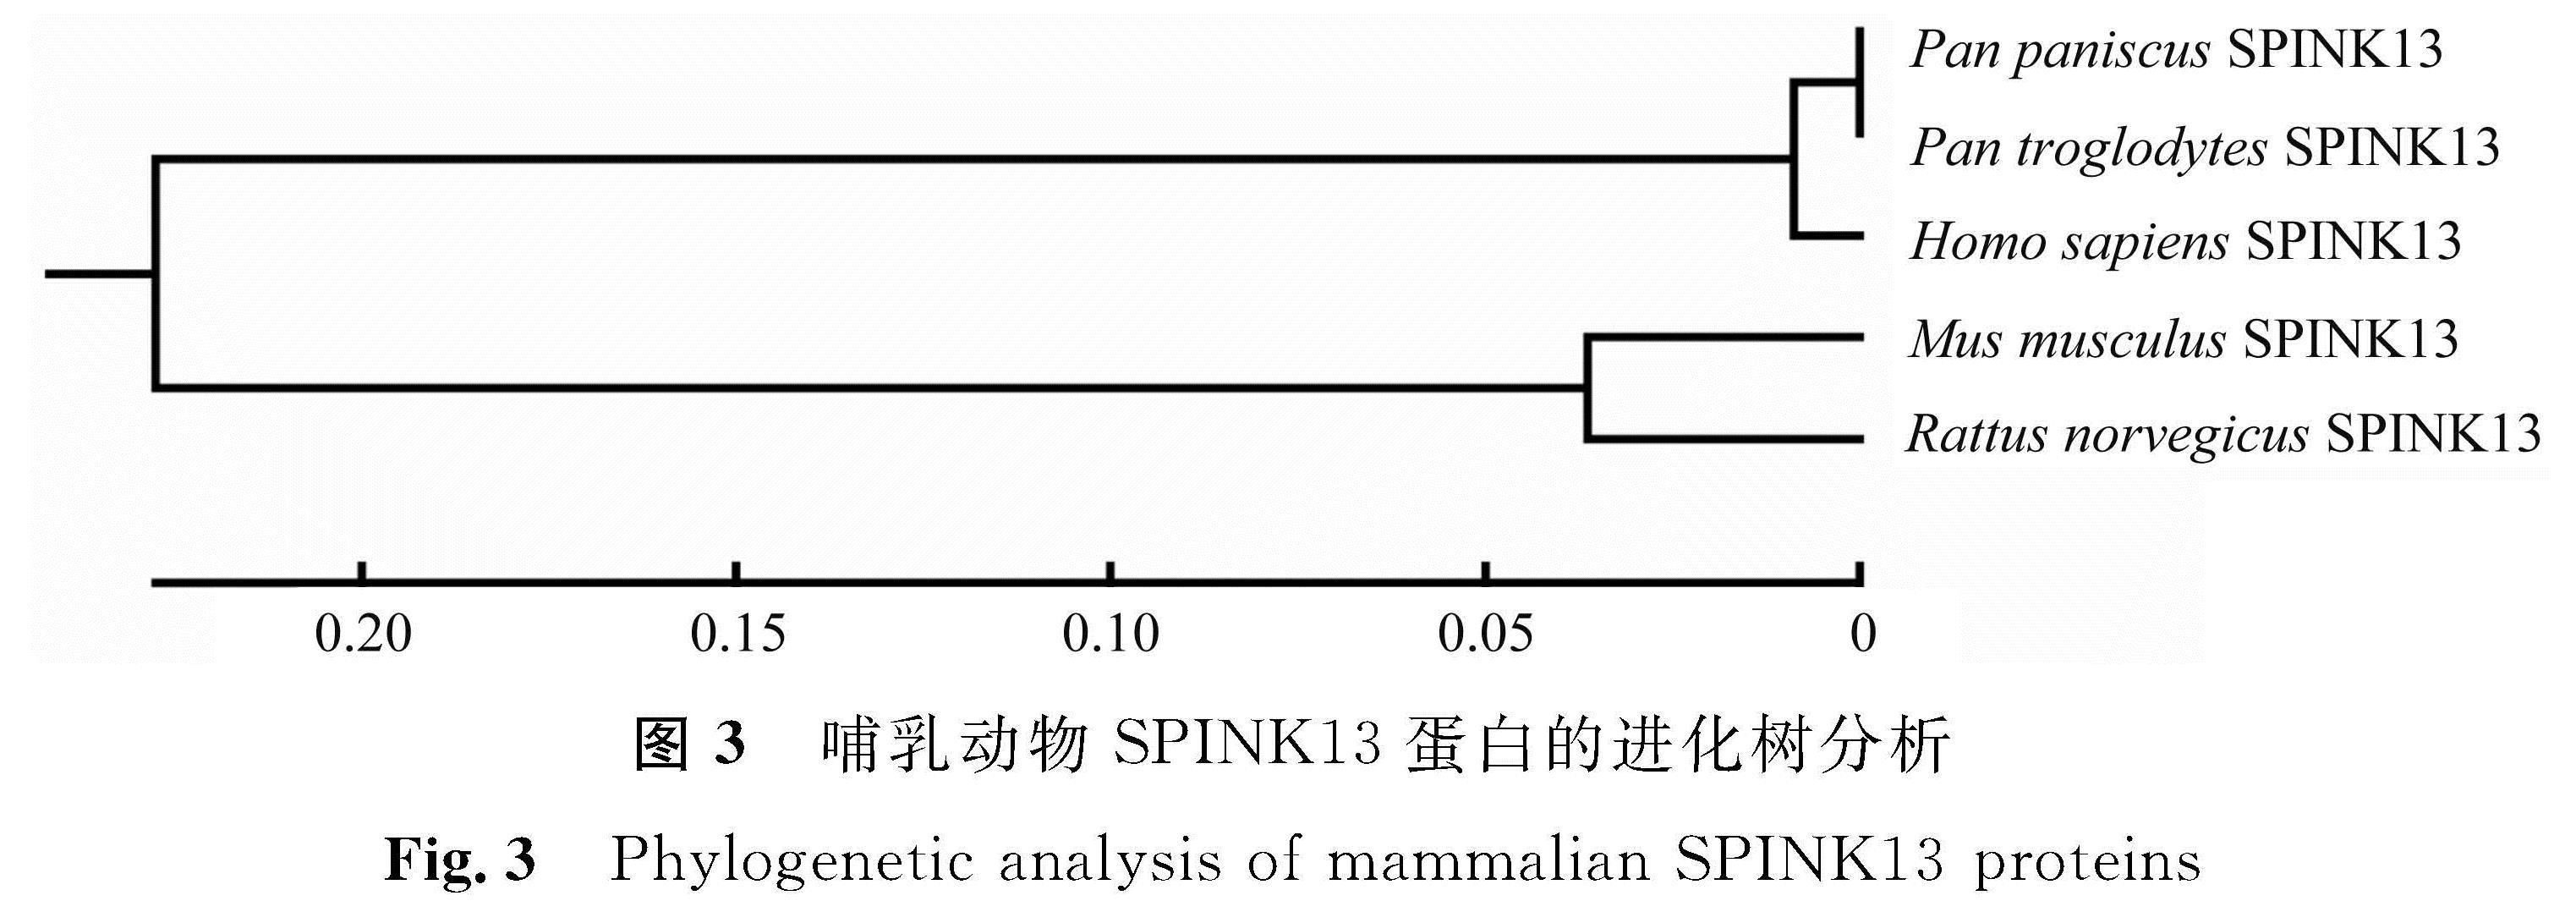 图3 哺乳动物SPINK13蛋白的进化树分析<br/>Fig.3 Phylogenetic analysis of mammalian SPINK13 proteins